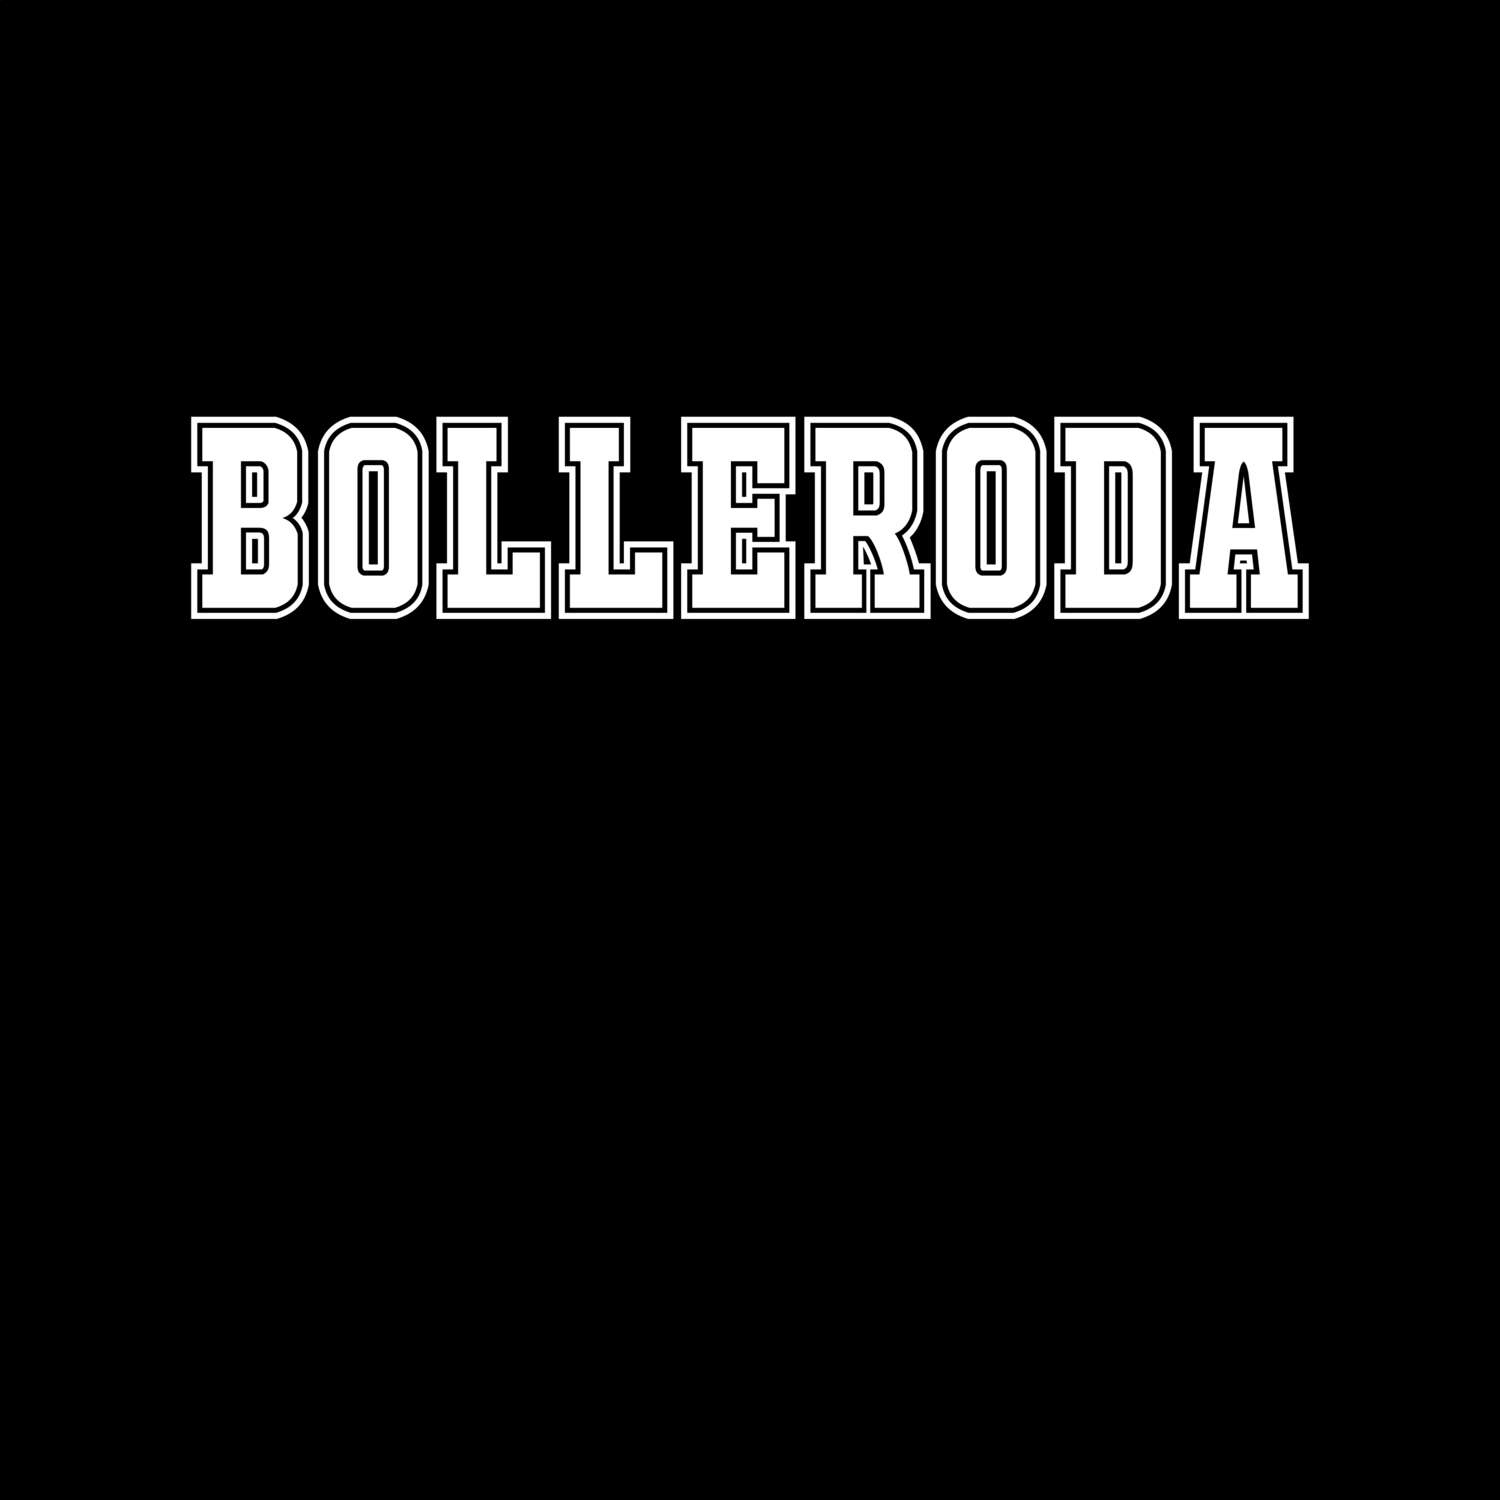 Bolleroda T-Shirt »Classic«